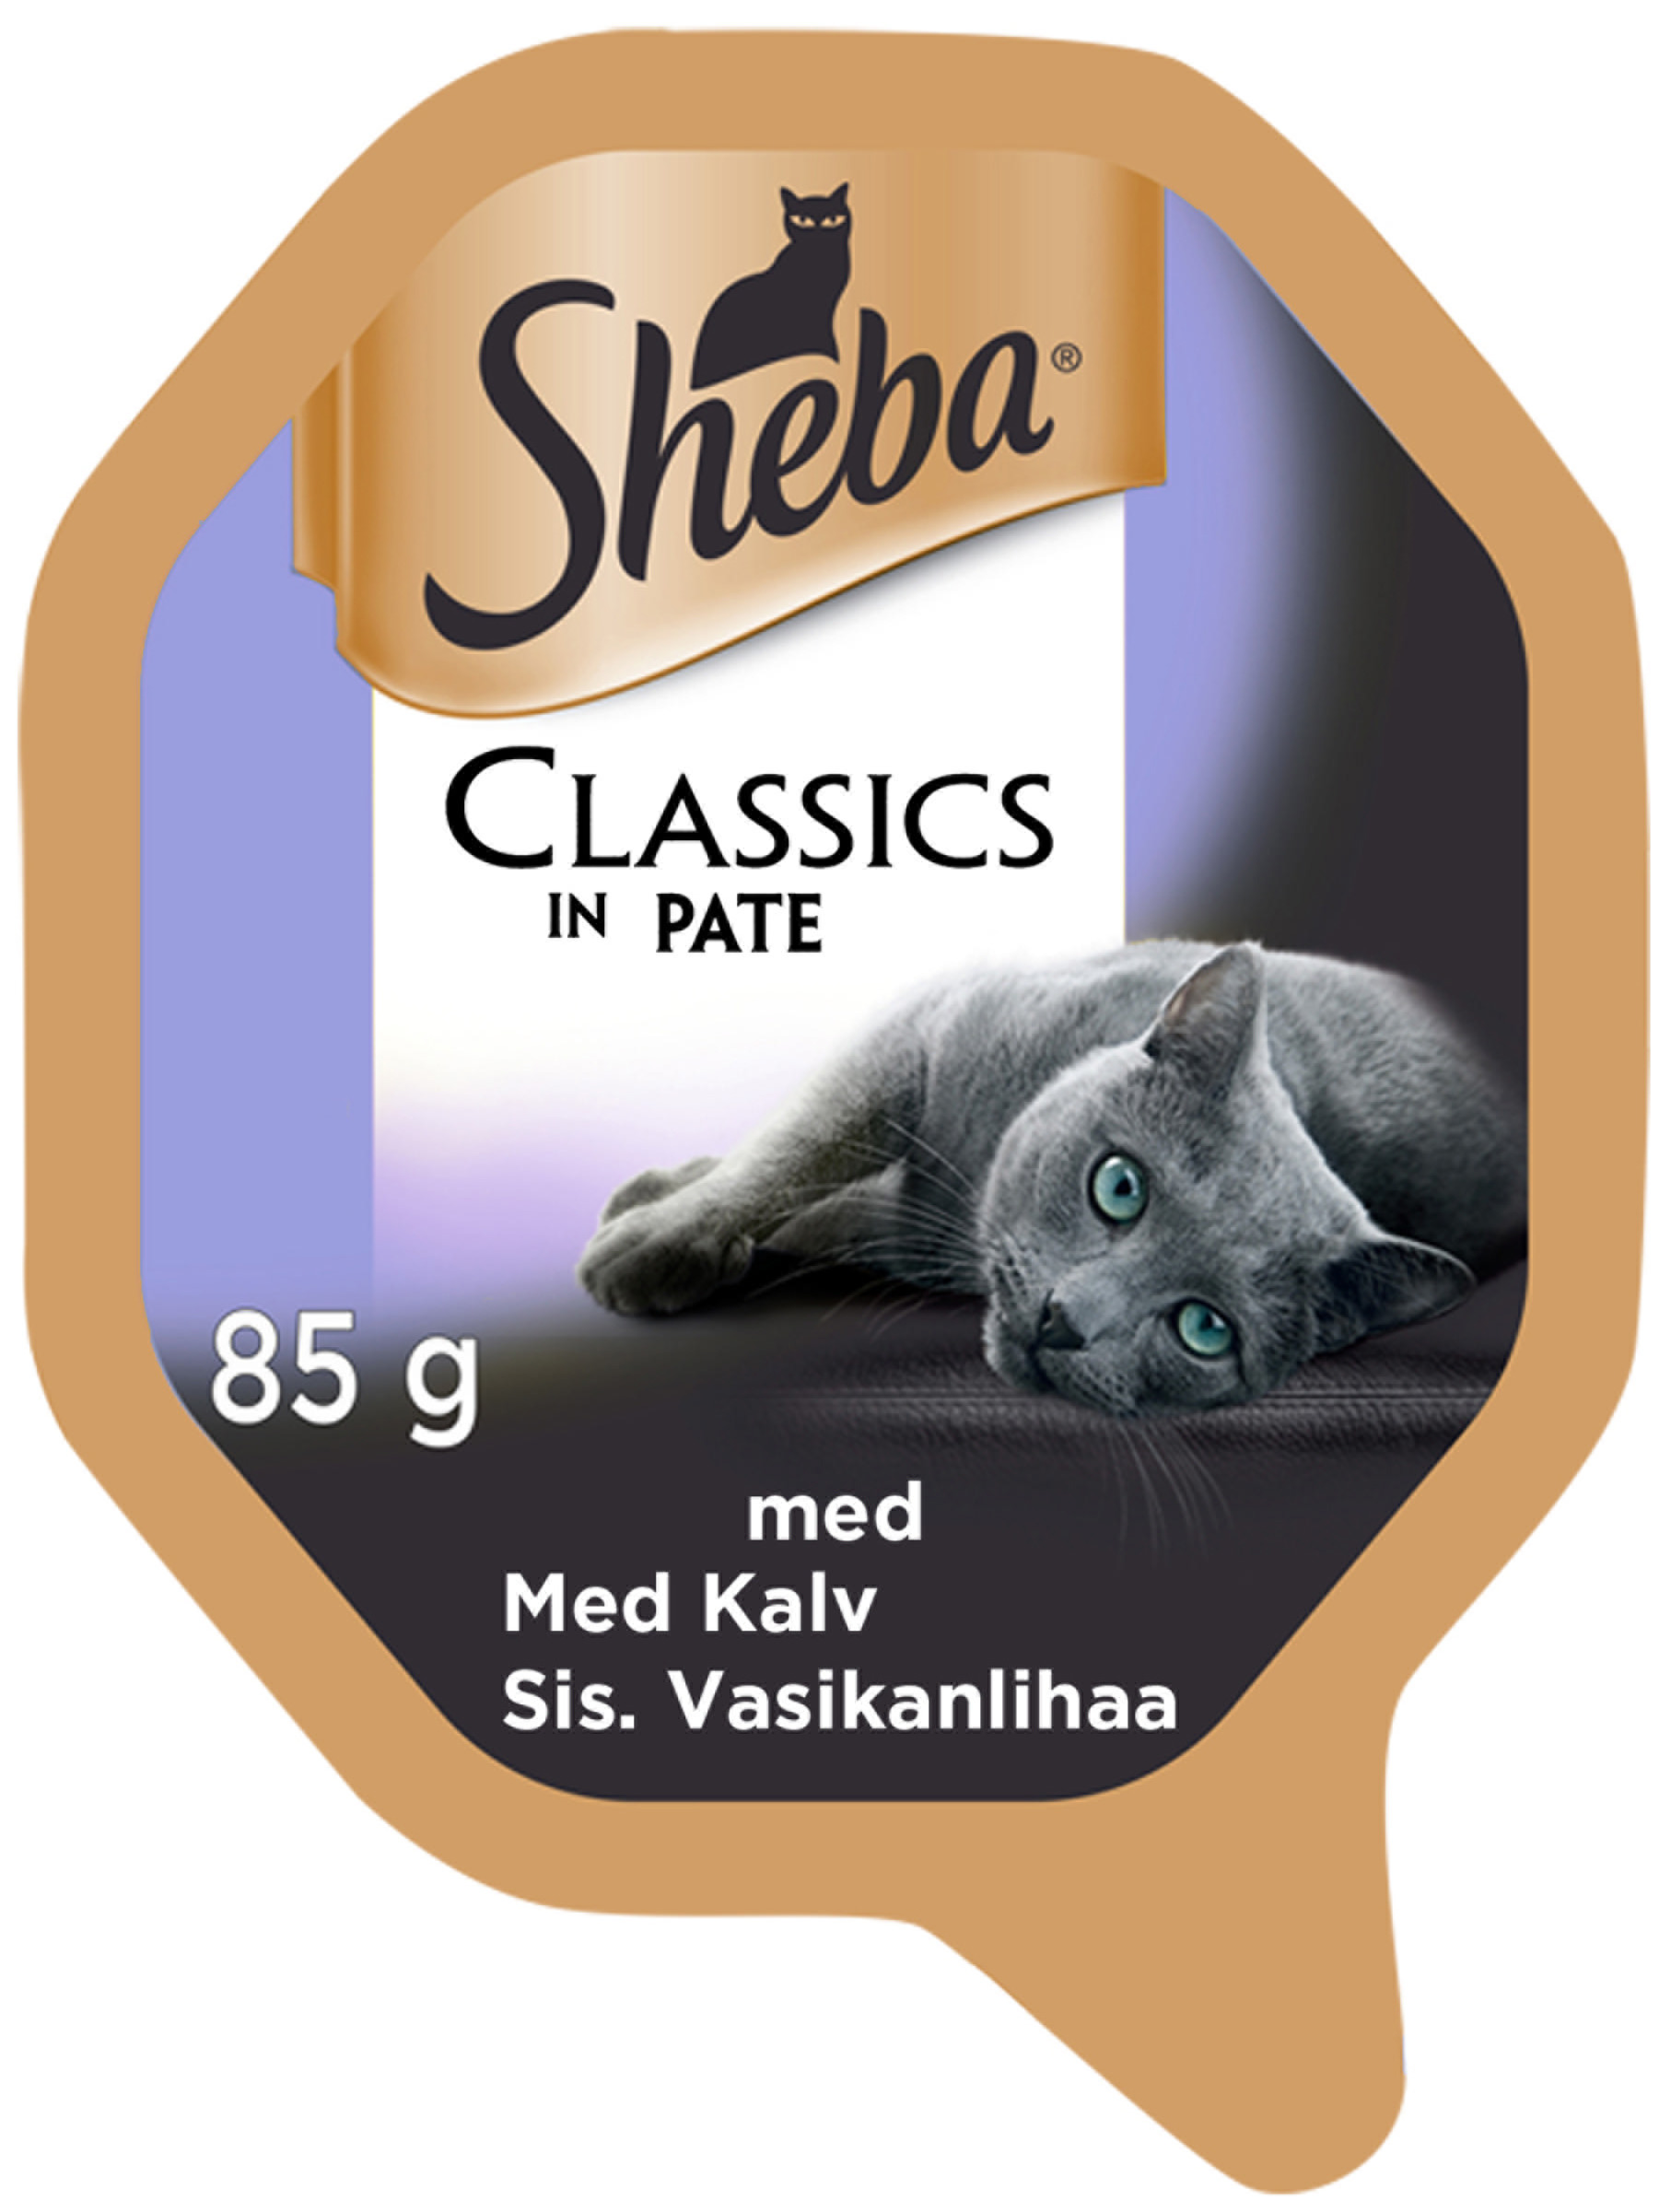 Sheba Classics in Pate Kalv 85g